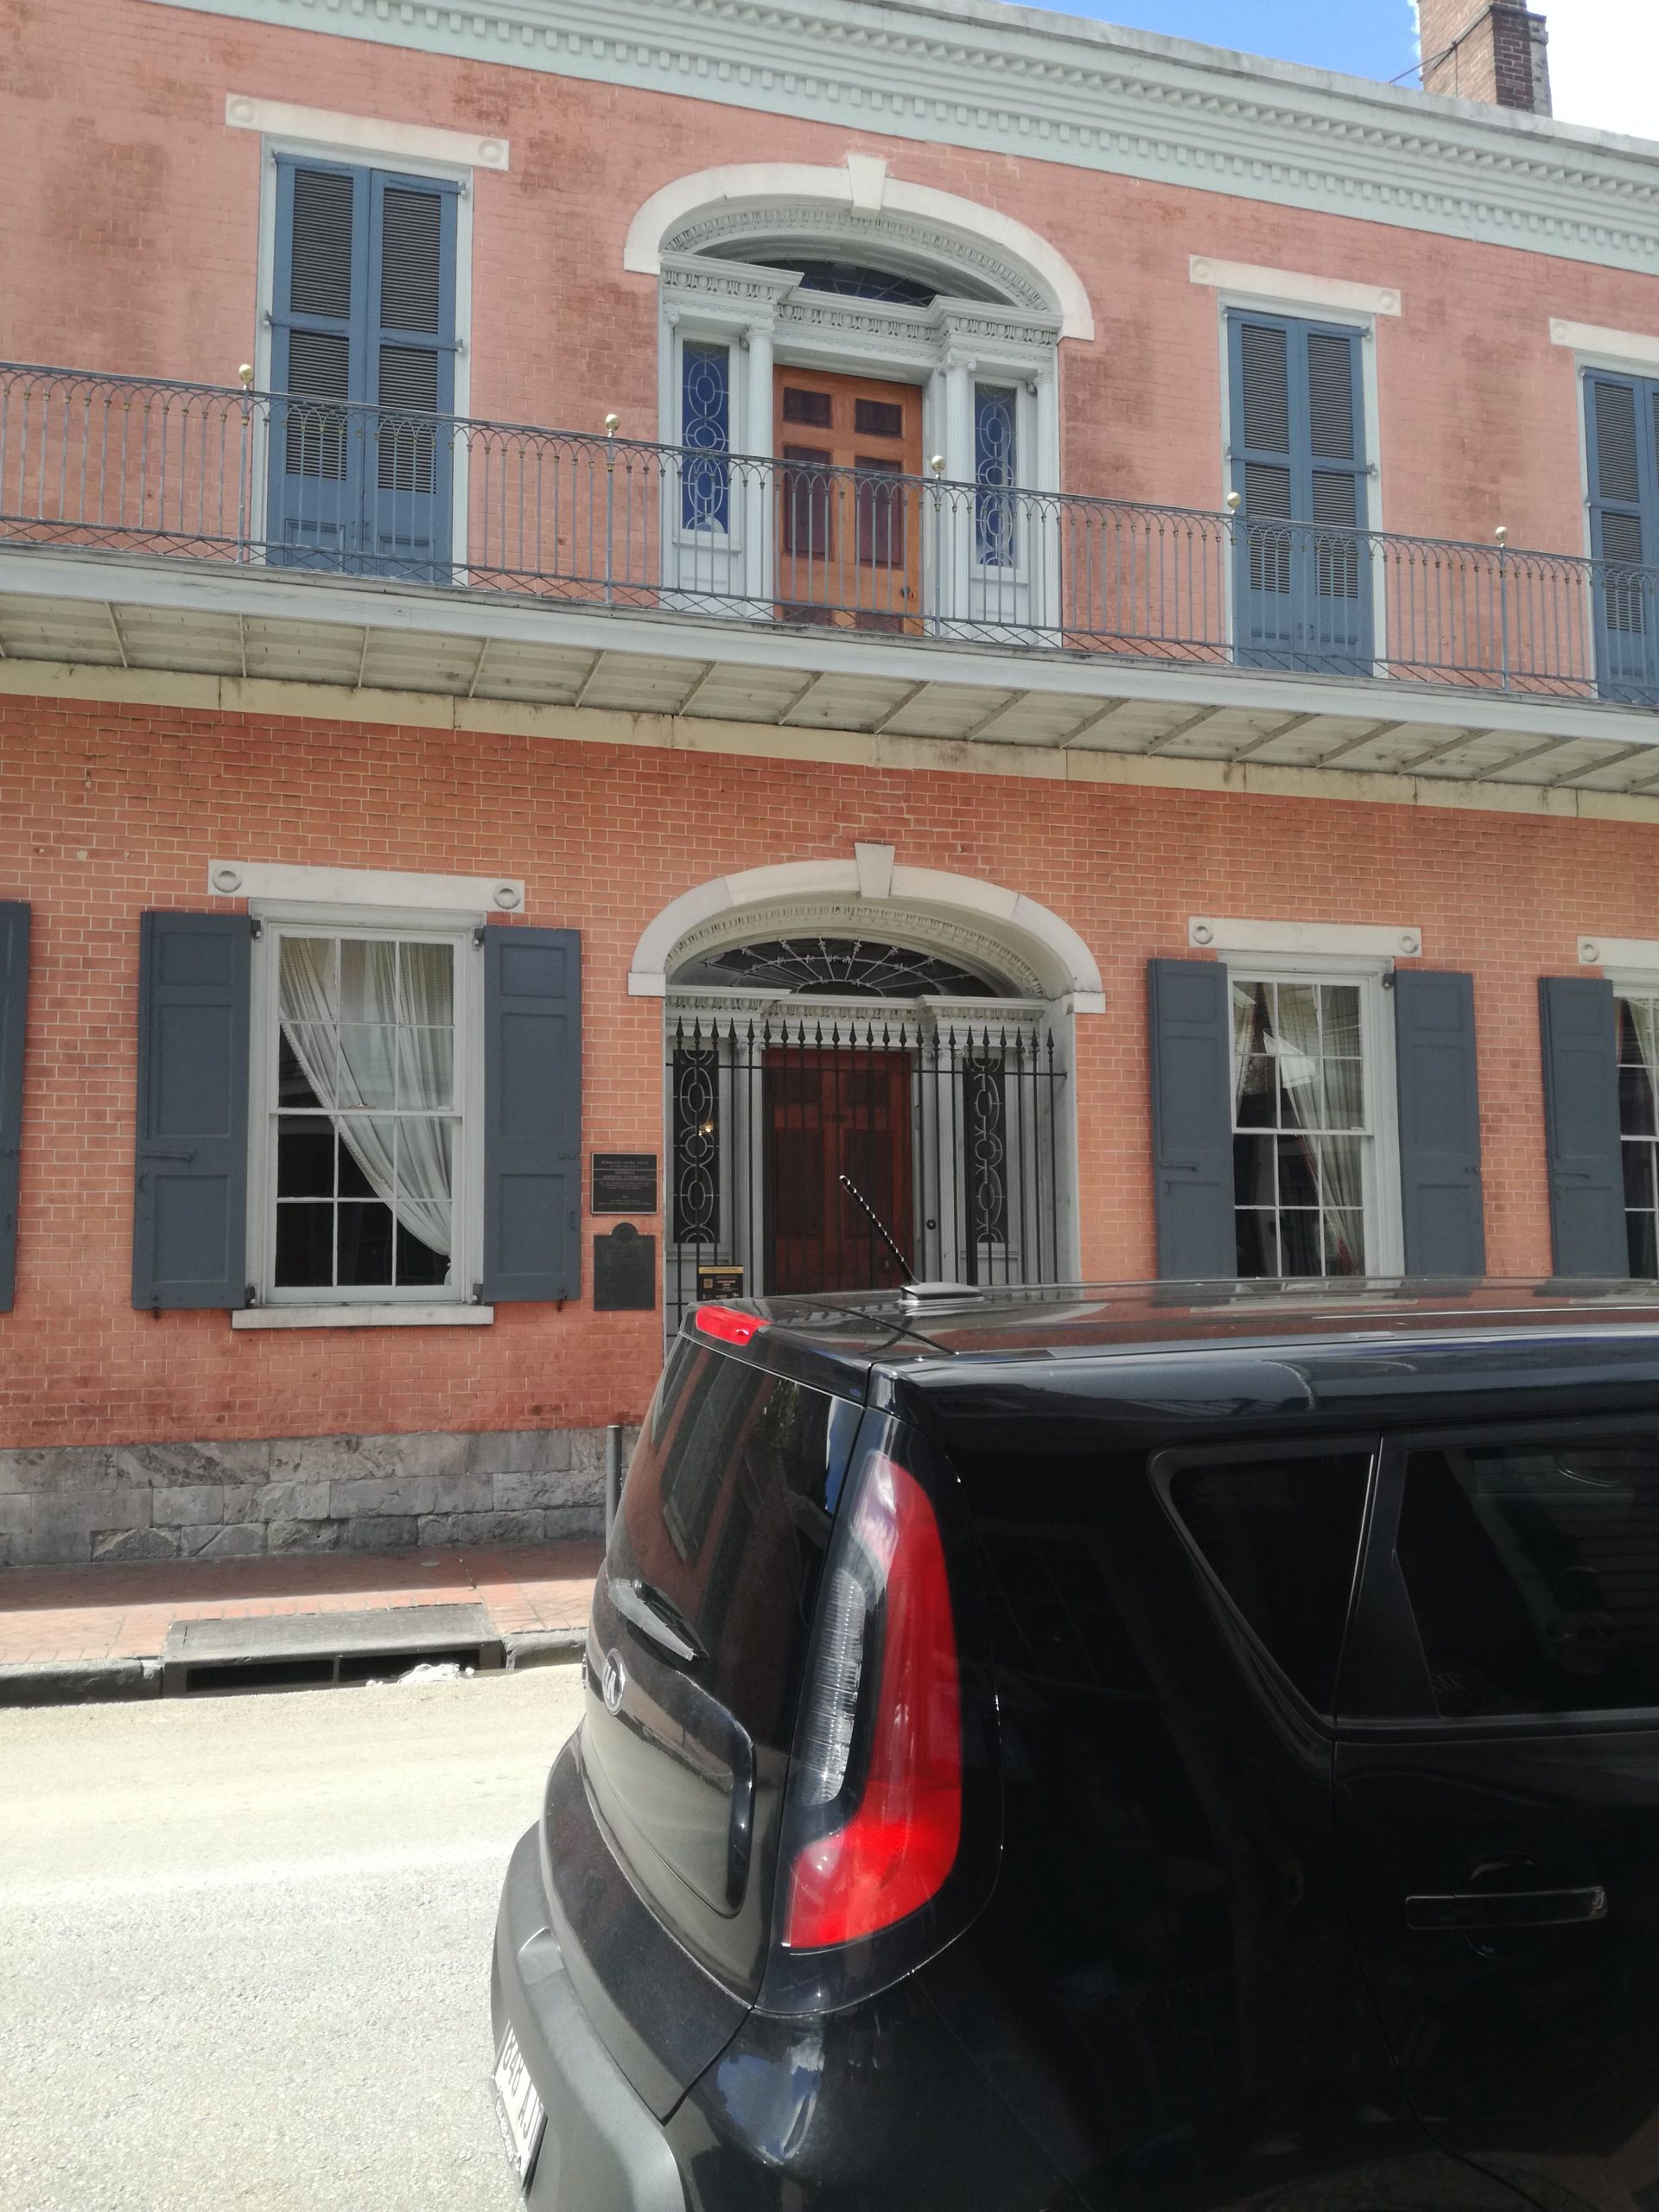 Lososový dom s krásnymi balkónmi a okenicami, pred ktorým stojí čierne auto.